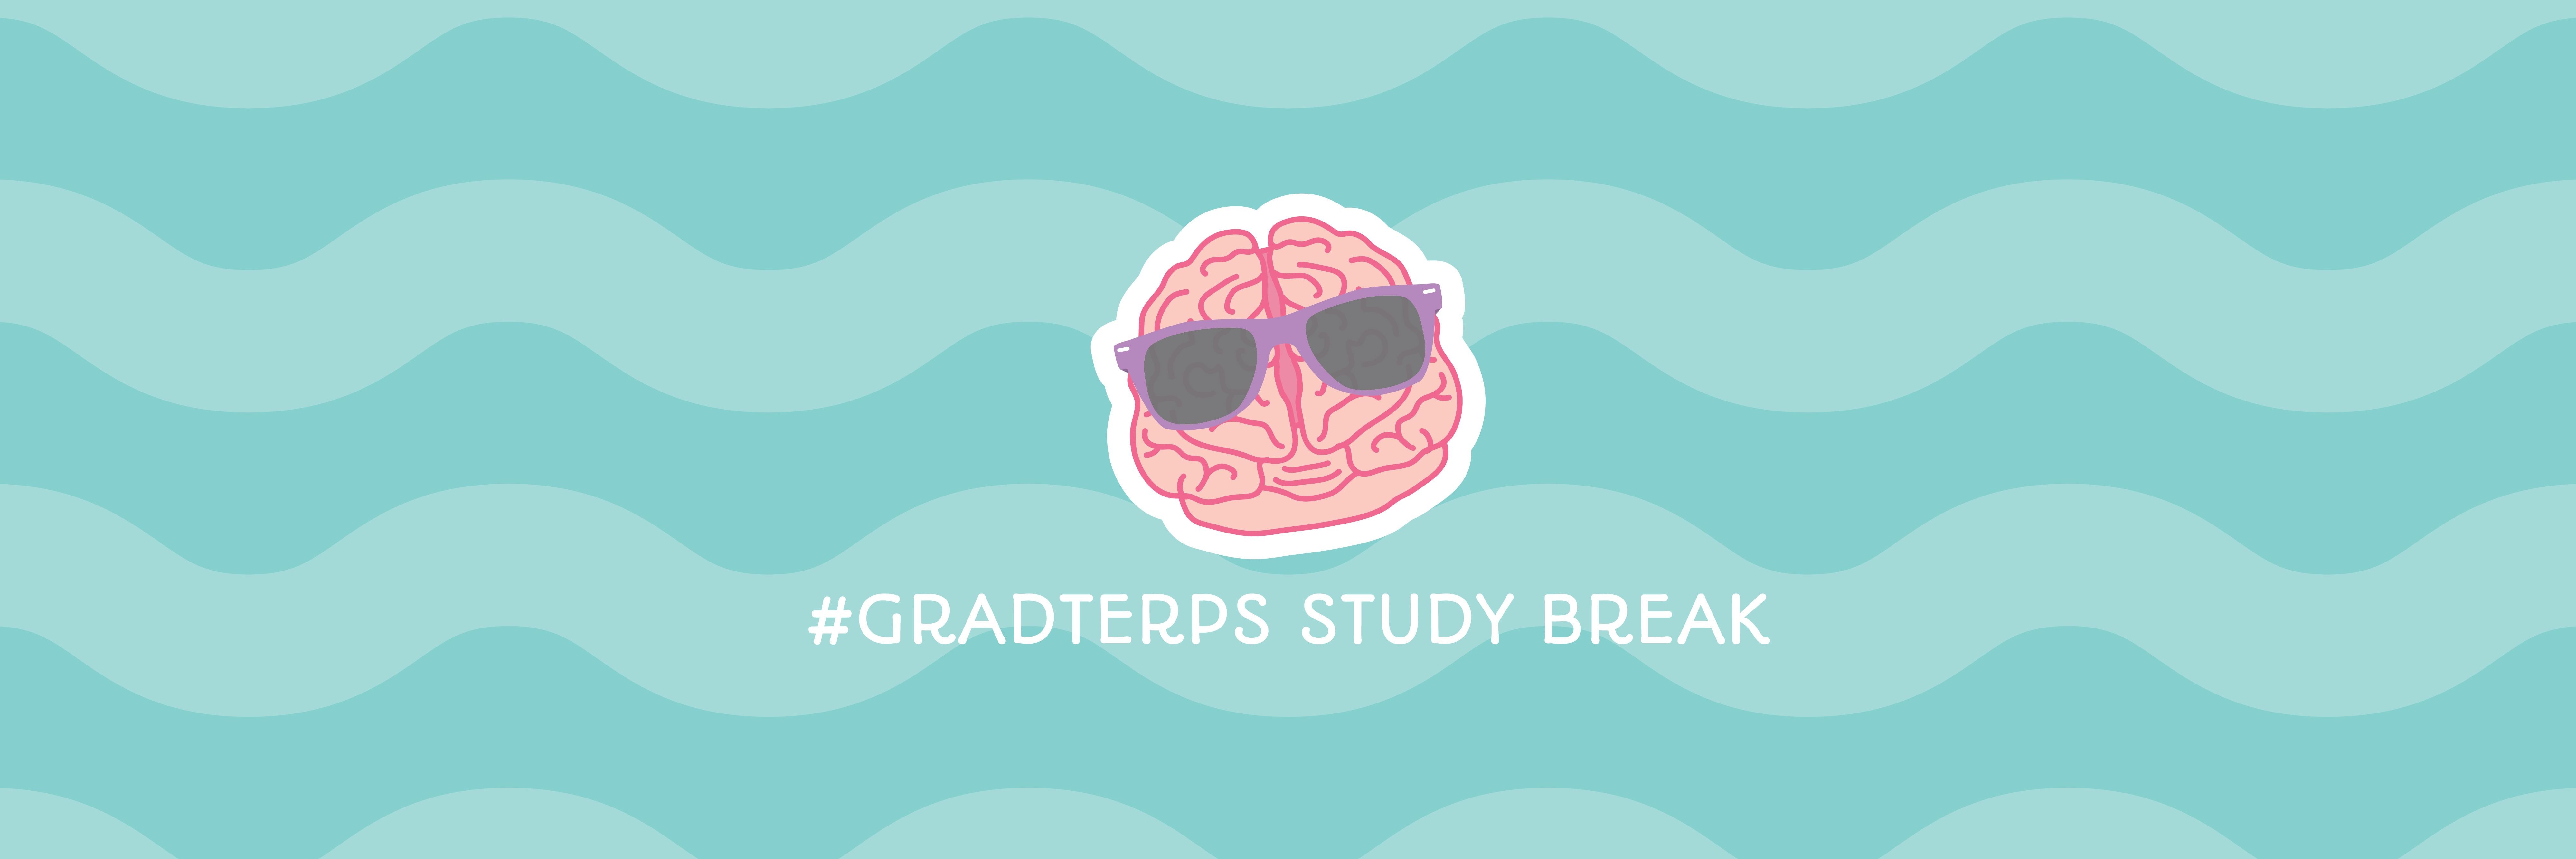 GradTerps Study Break